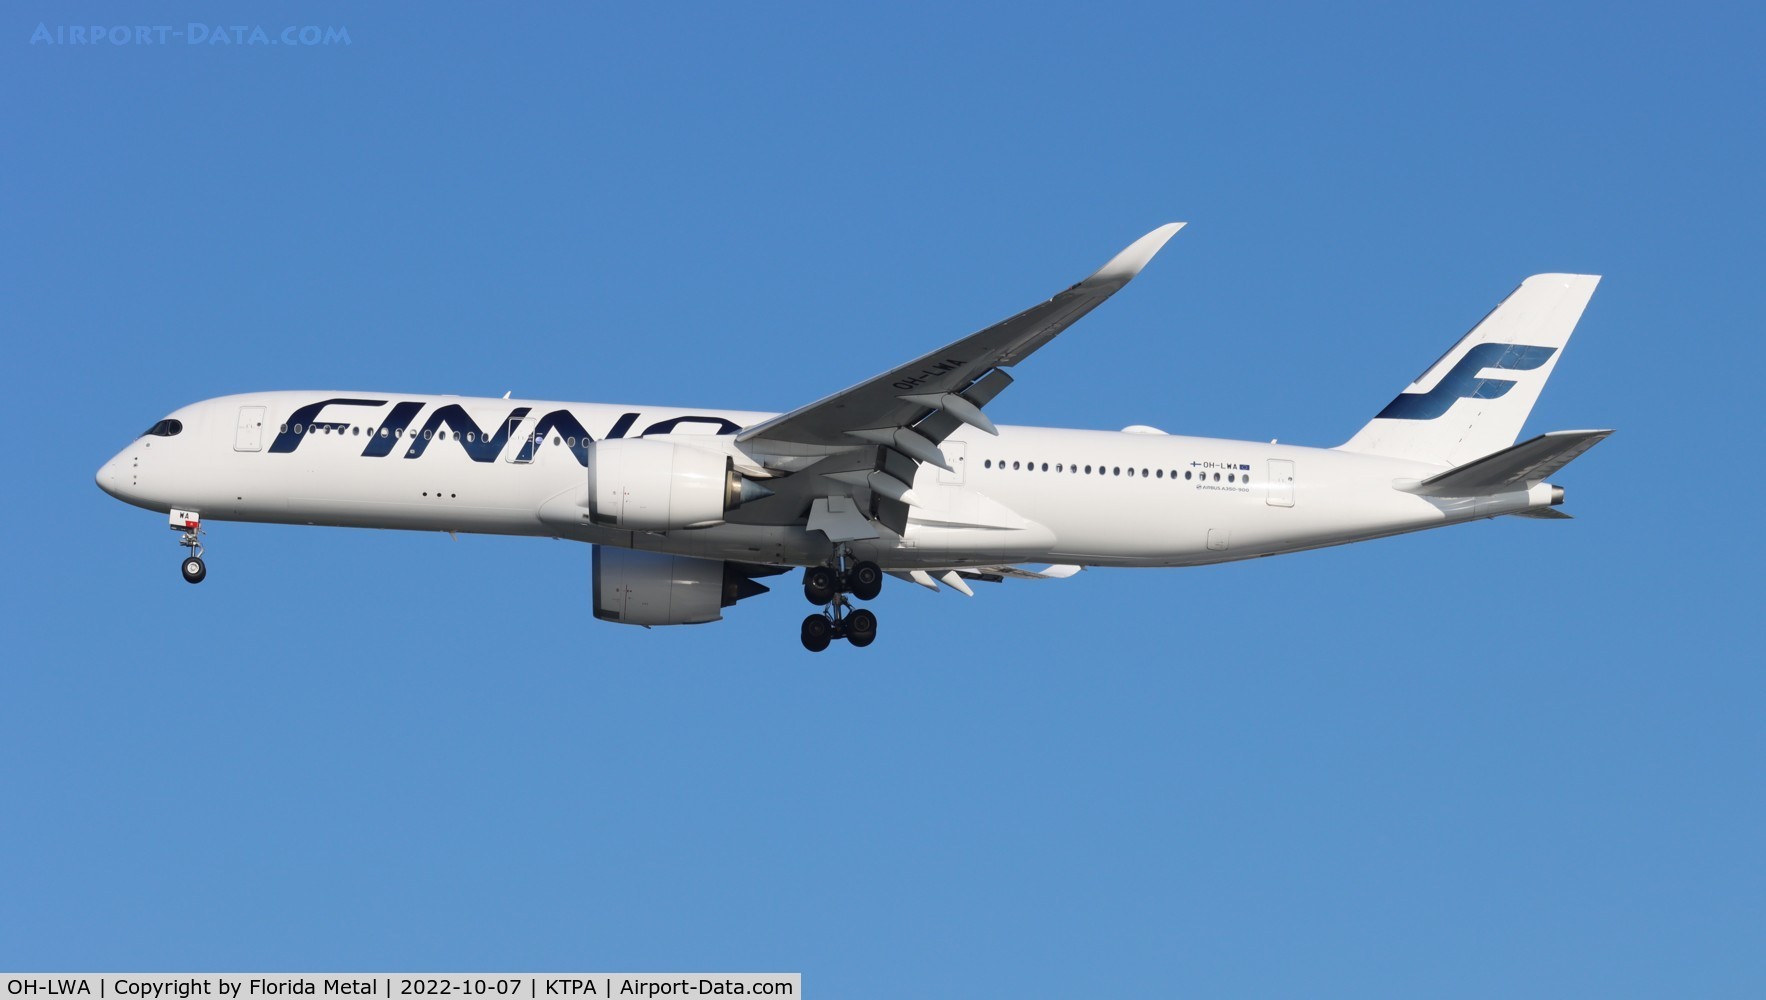 OH-LWA, 2015 Airbus A350-941 C/N 018, Finnair